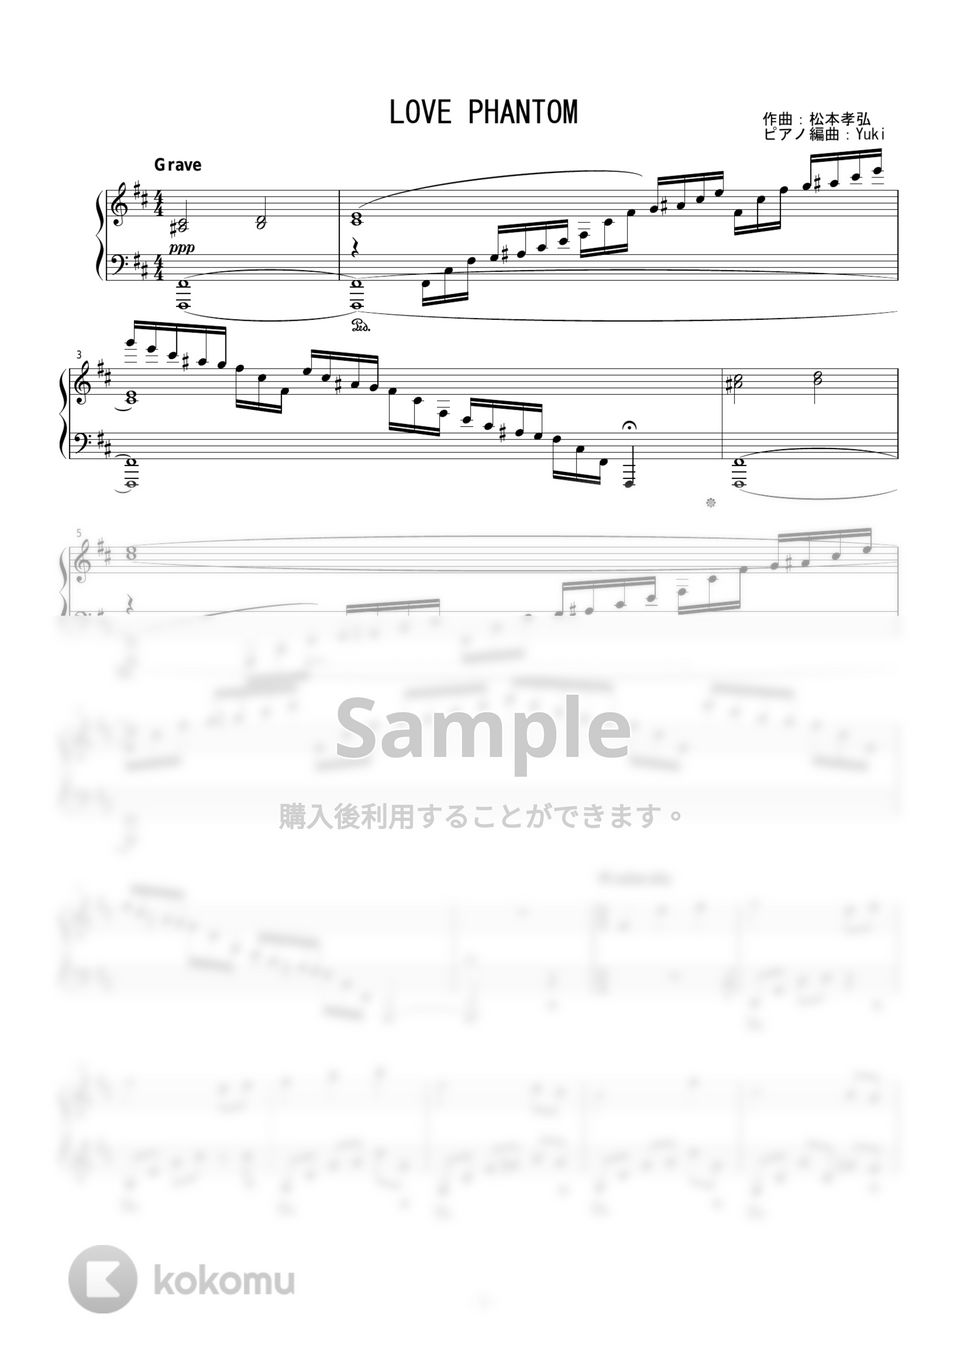 B'z - LOVE PHANTOM by Yuki@ピアノの先生